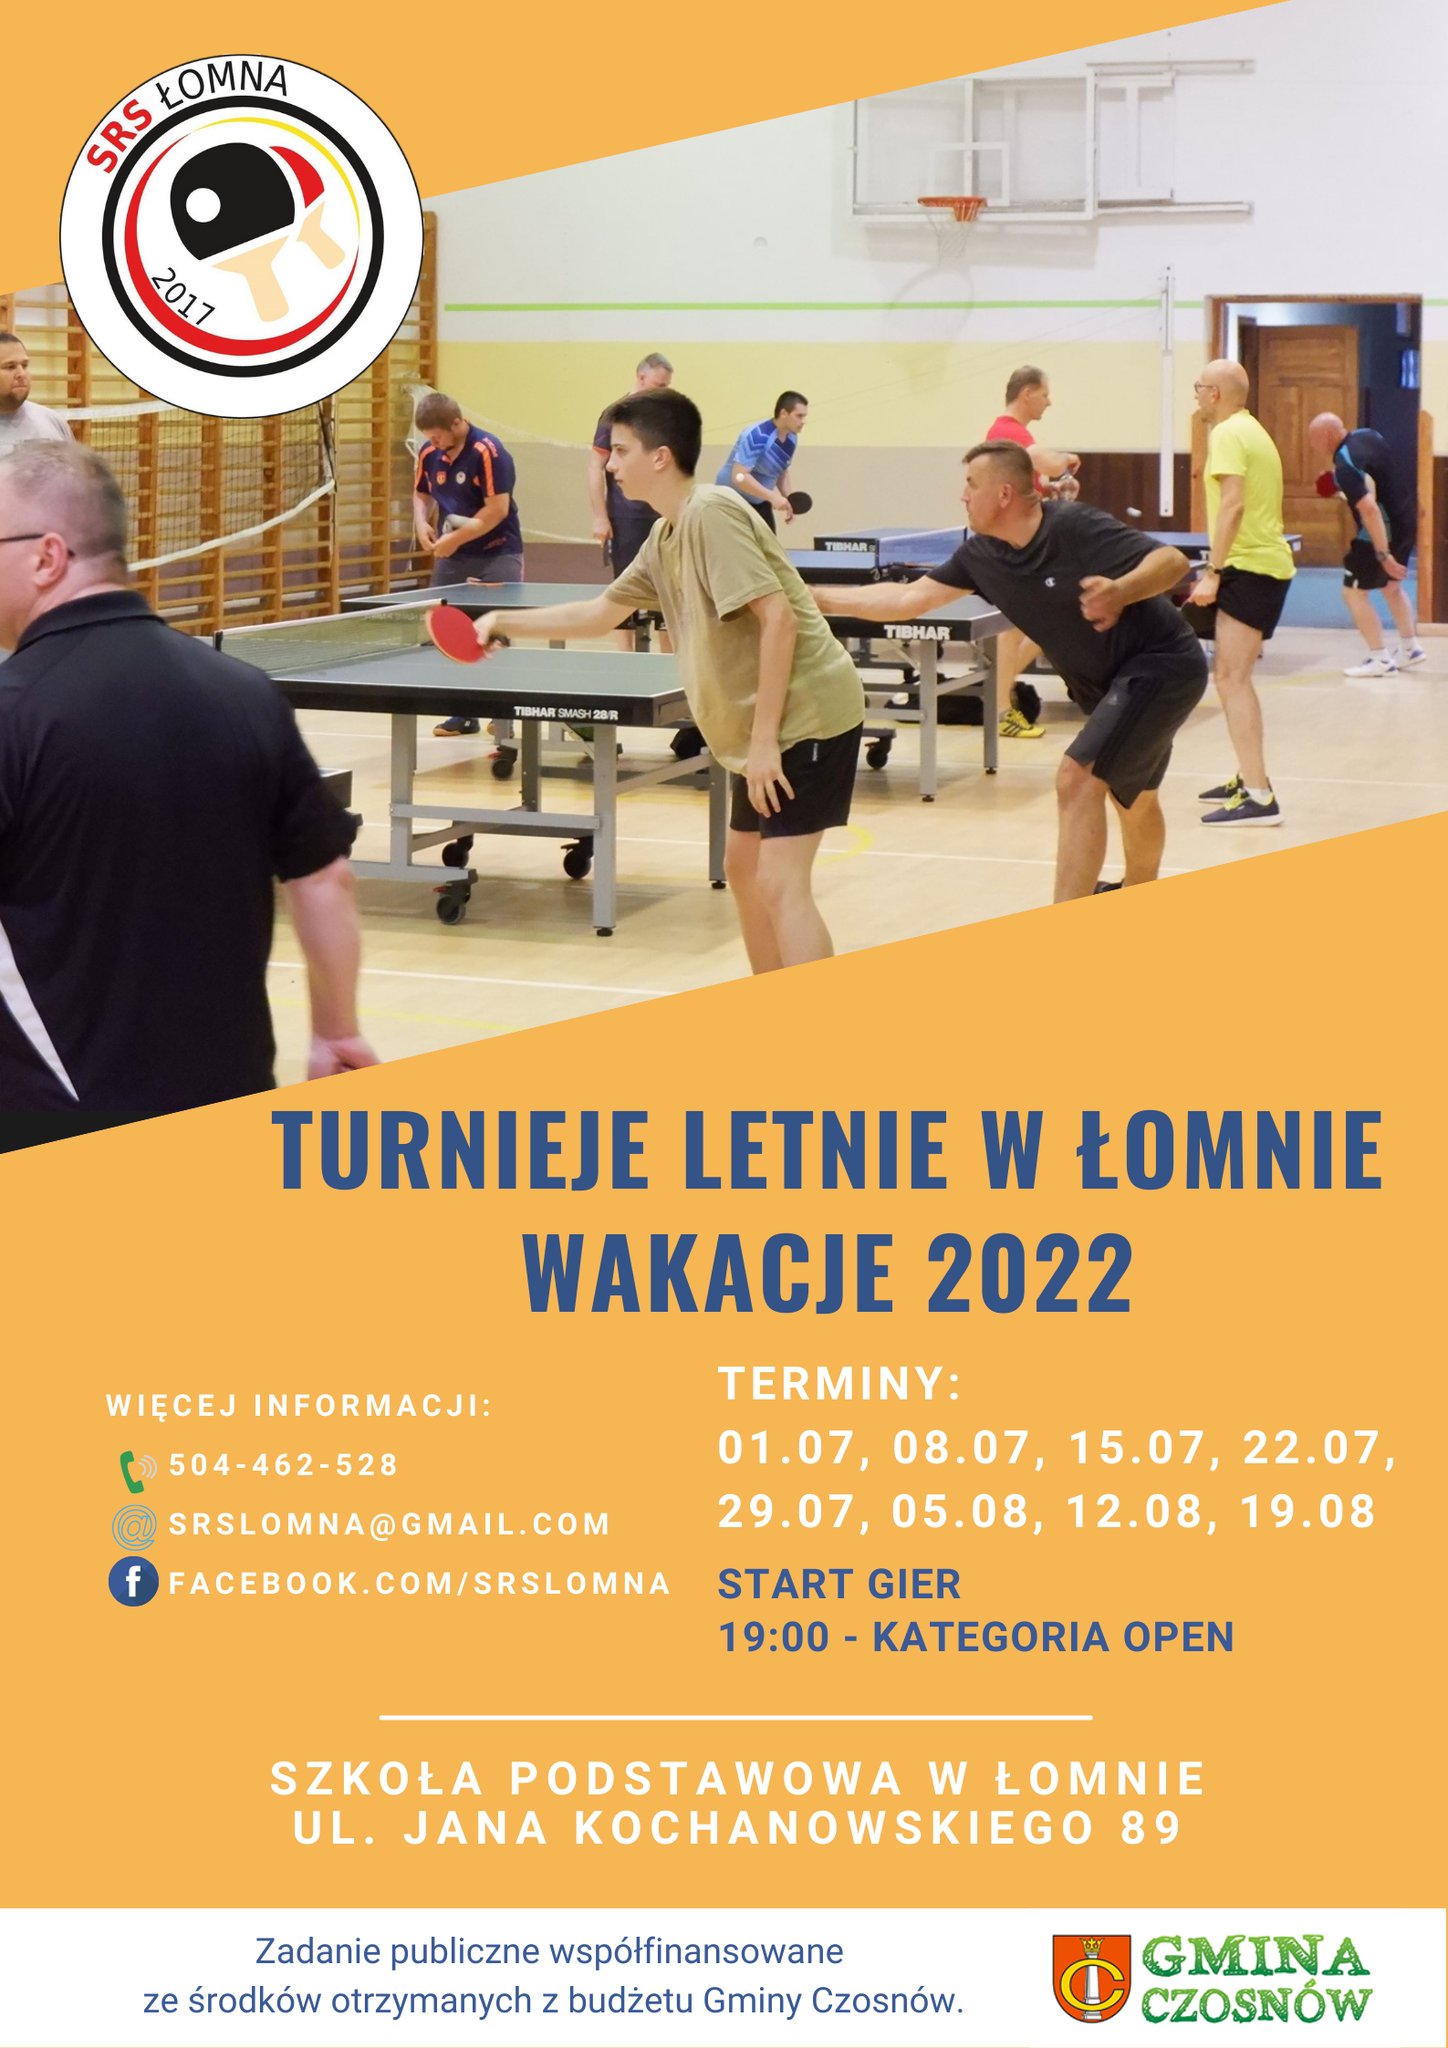 Plakat turnieju Turnieje letnie w Łomnie wakacje 2022 - termin 7